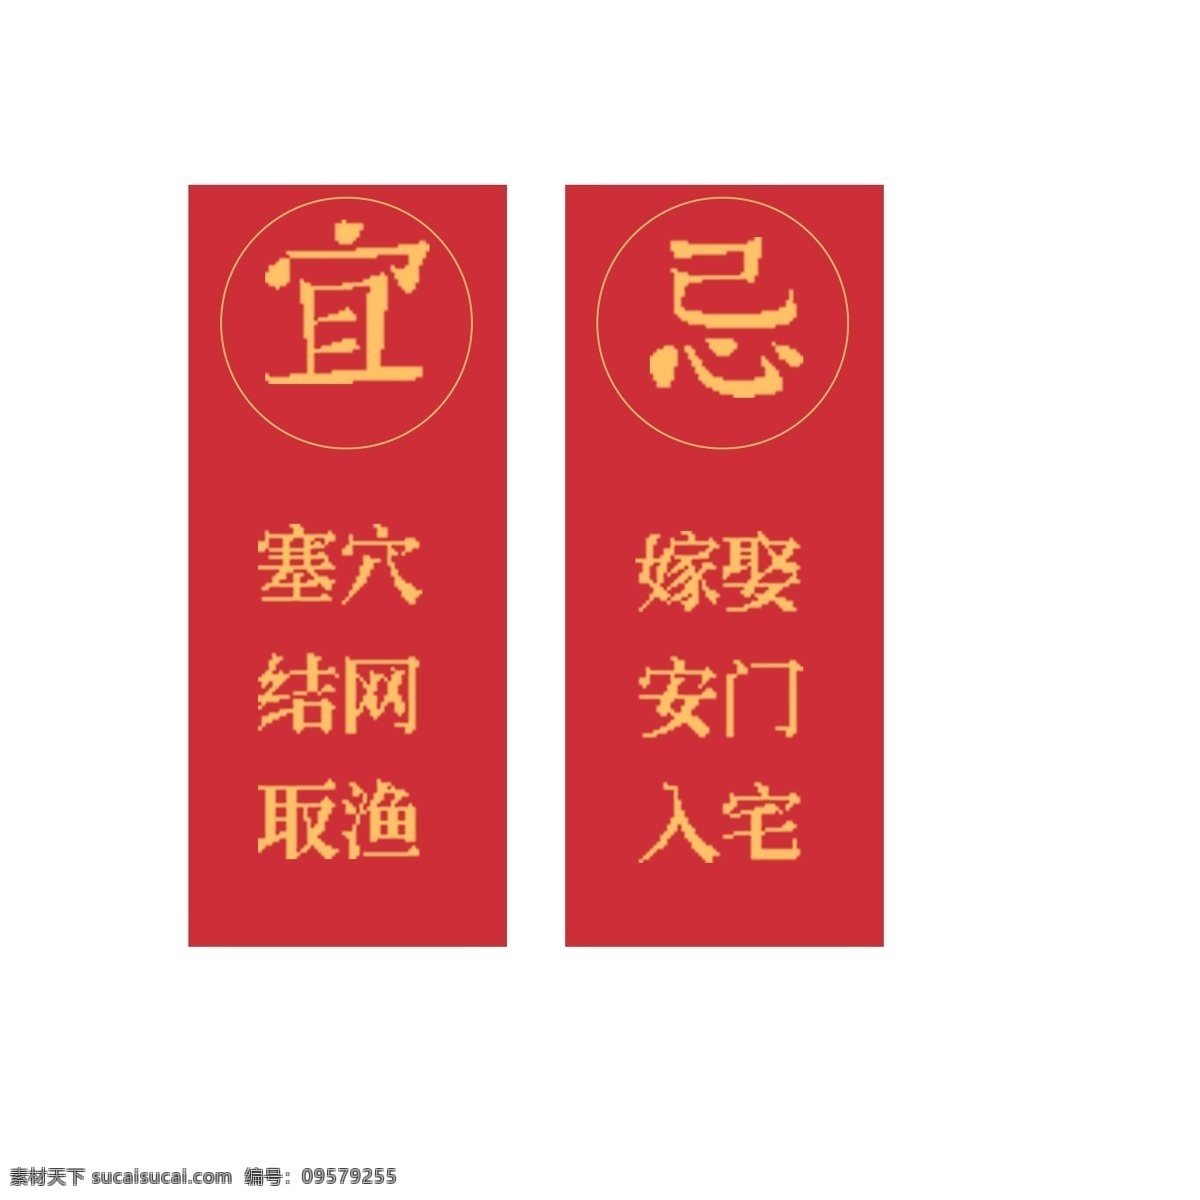 红色 对联 免 抠 图 中国传统对联 新春对联 红色的对联 一对红色对联 免抠图